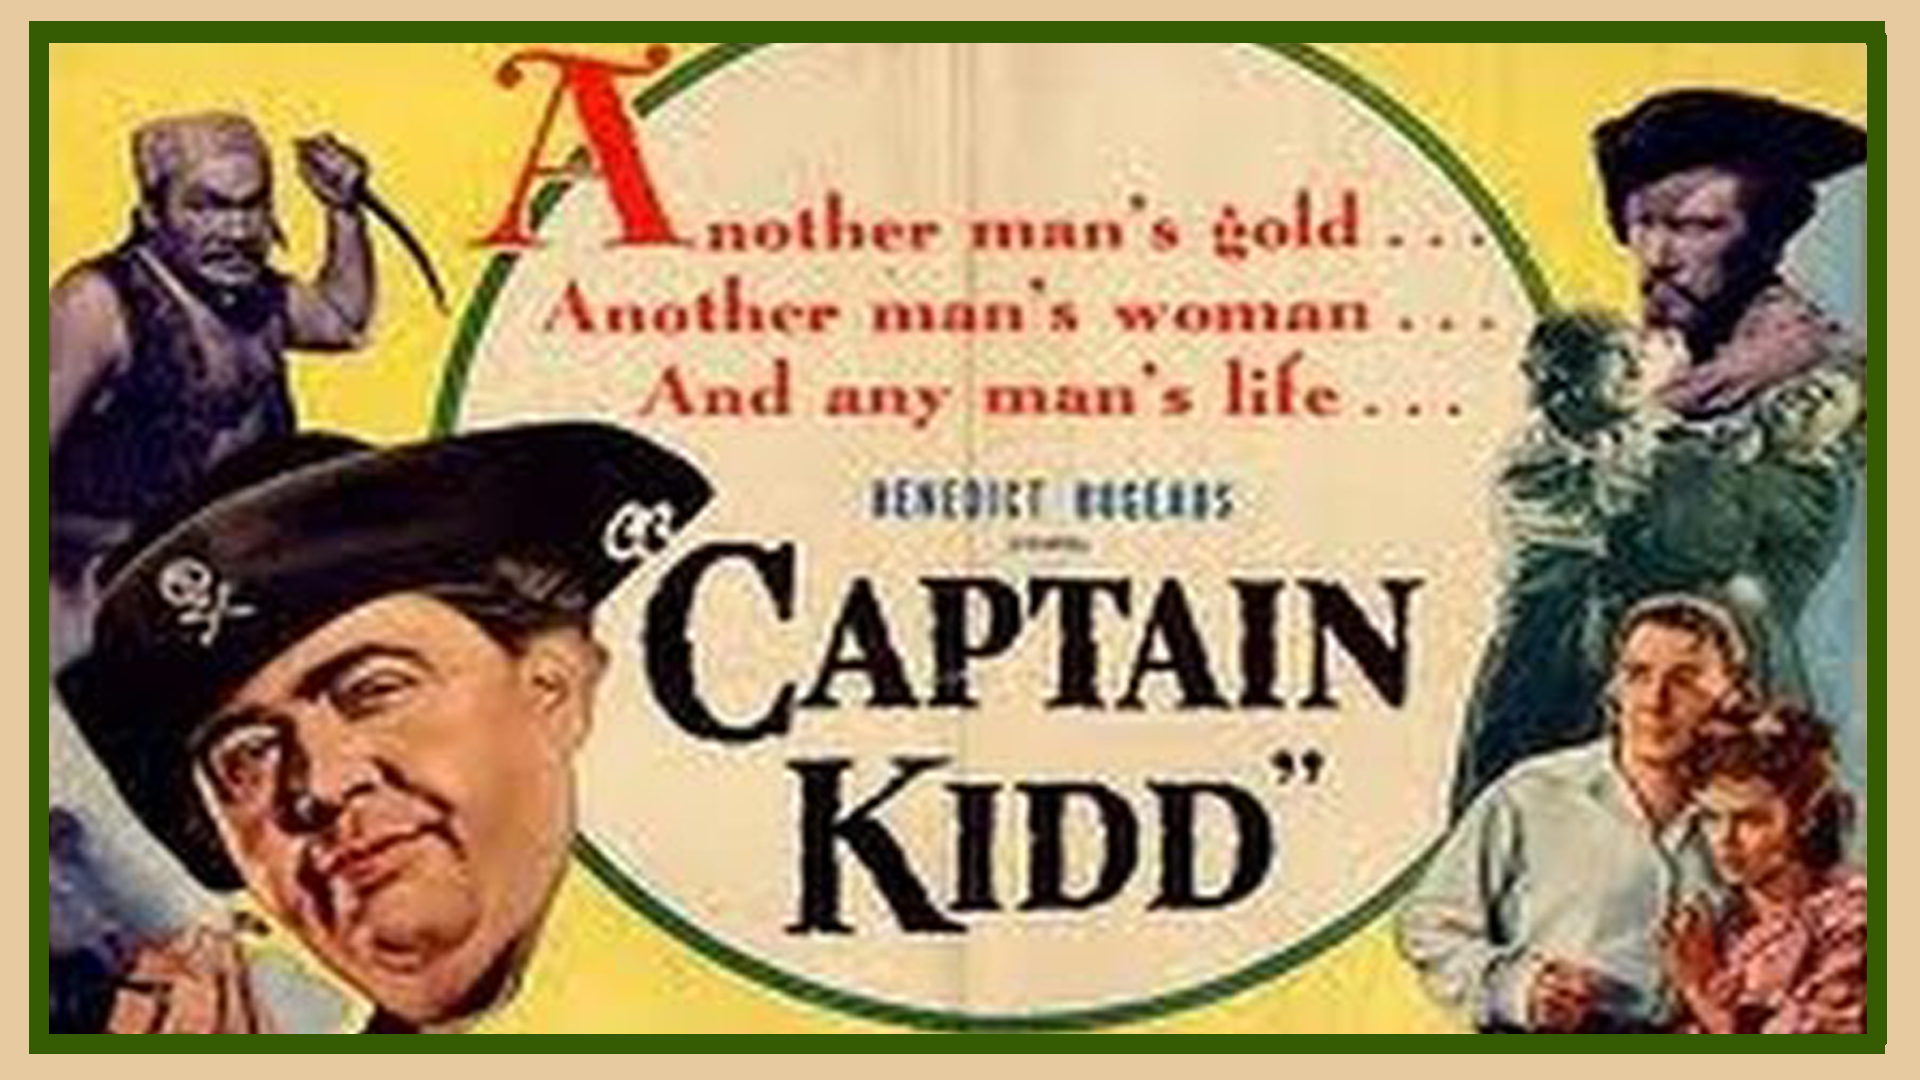 meet captain kidd